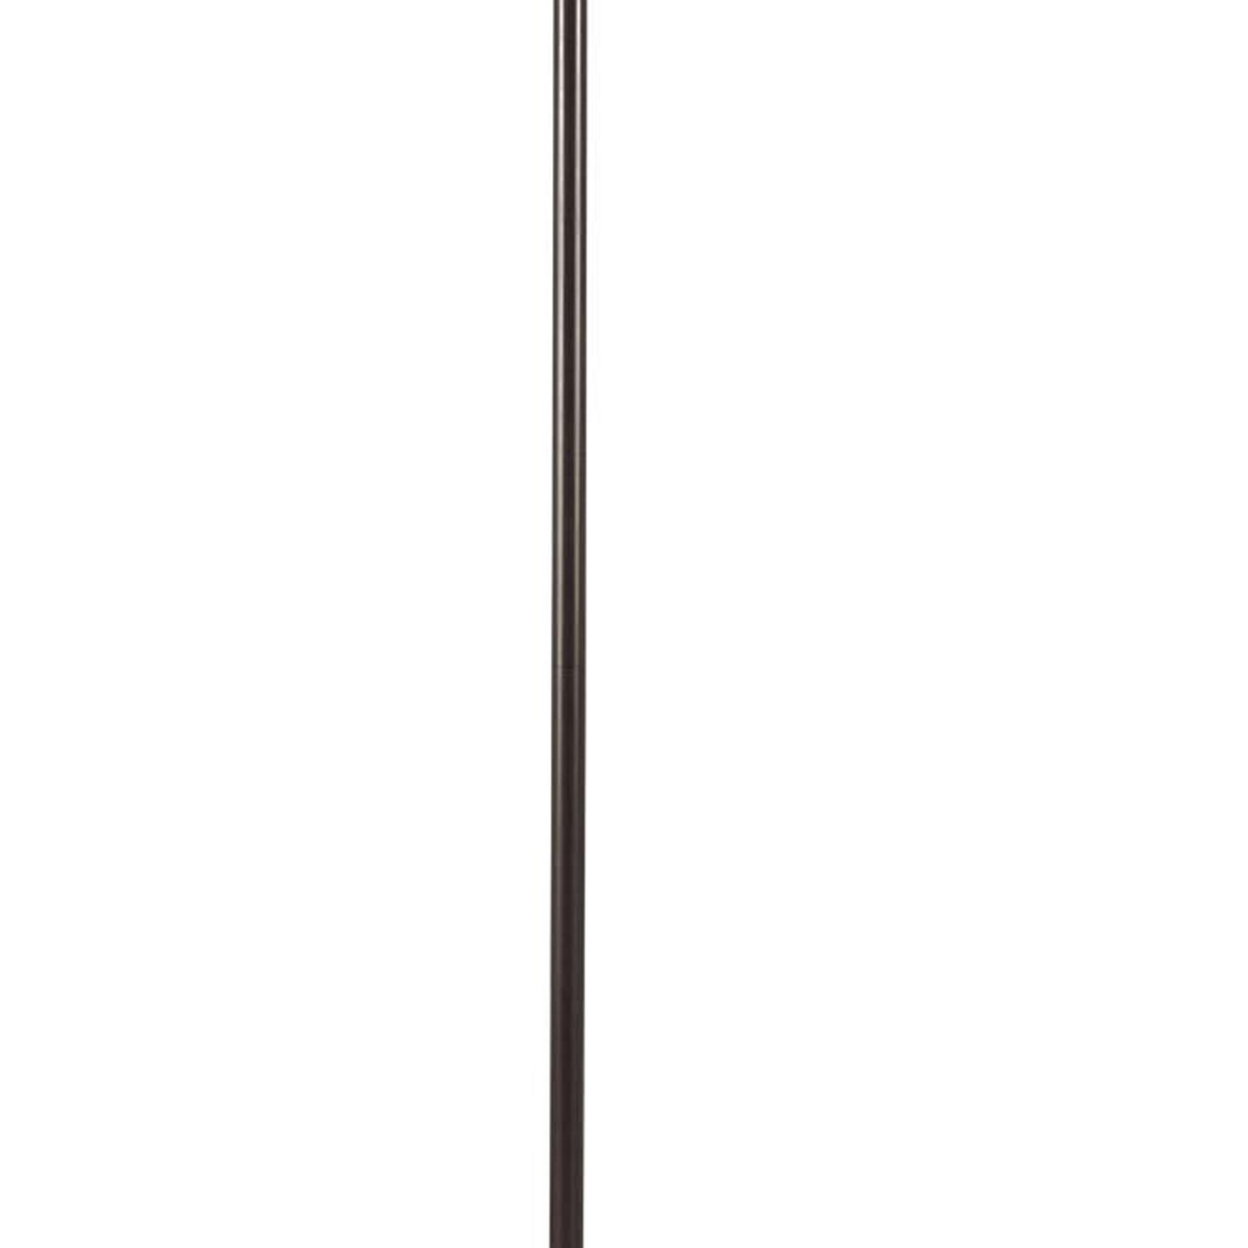 150 Watt 6 Way Metal Floor Lamp With Fabric Tapered Shade, Bronze- Saltoro Sherpi